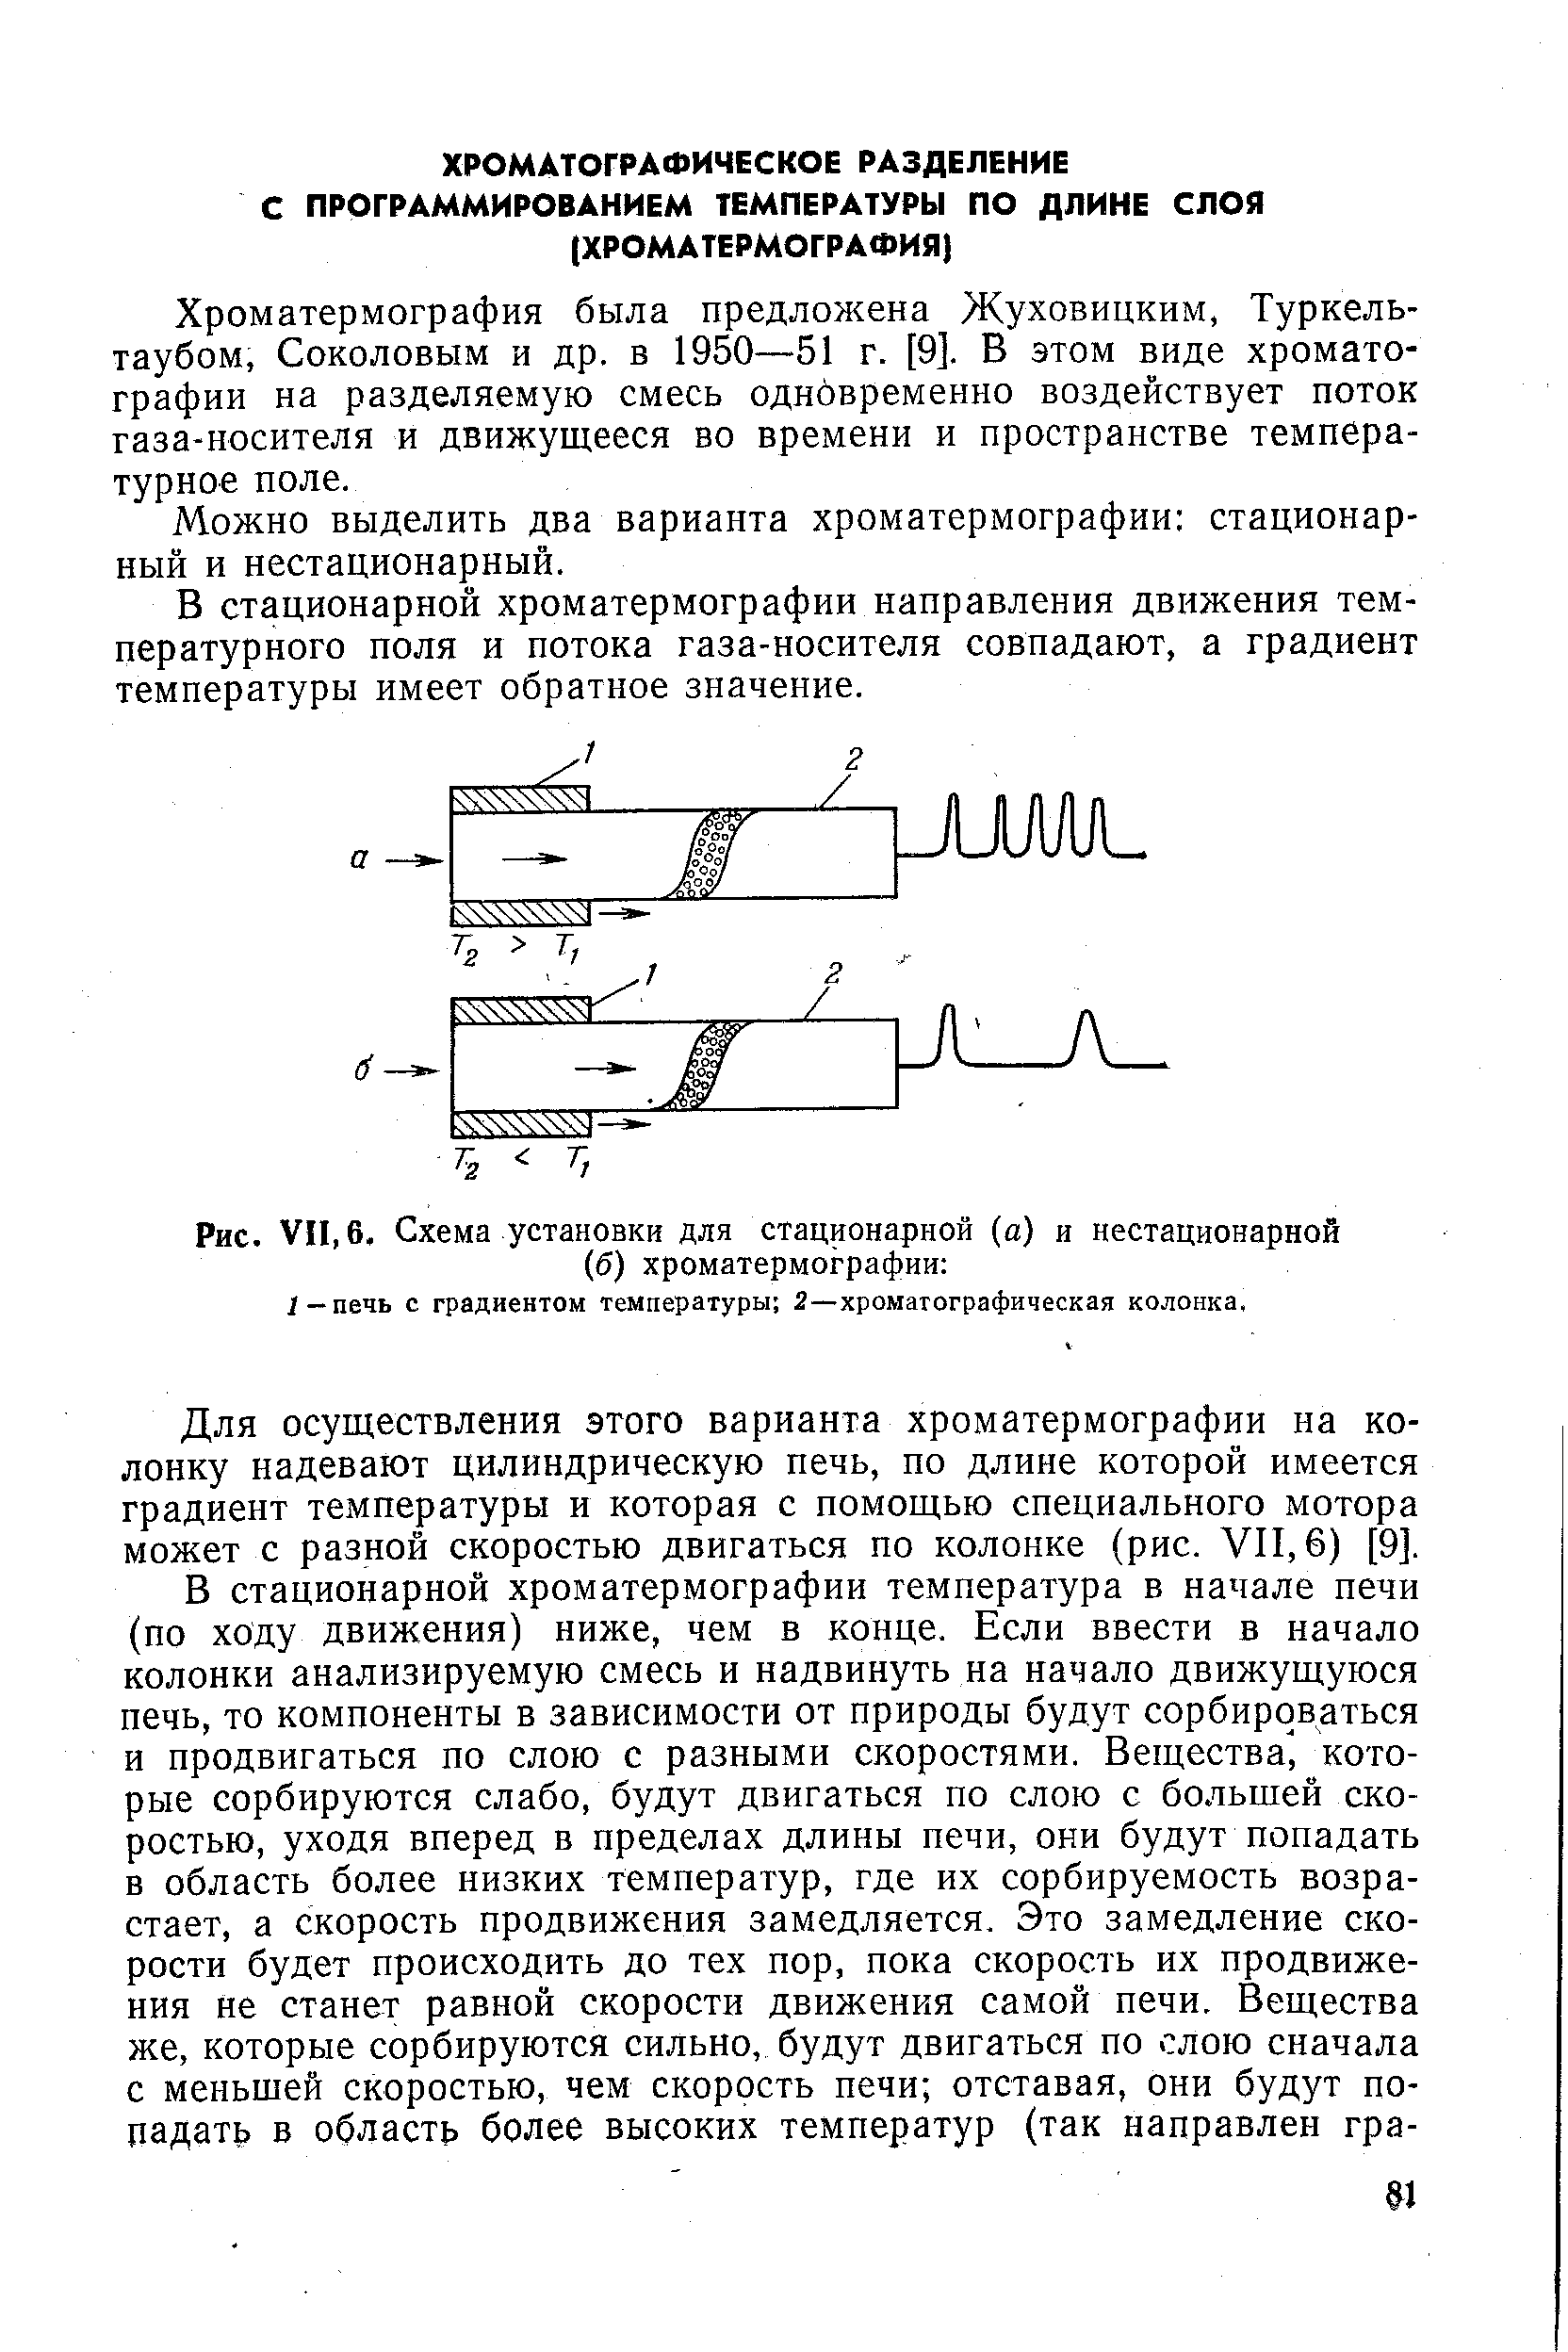 Хроматермография была предложена Жуховицким, Туркель-таубом, Соколовым и др. в 1950—51 г. [9]. В этом виде хроматографии на разделяемую смесь однбвременно воздействует поток газа-носителя и движущееся во времени и пространстве температурное поле.